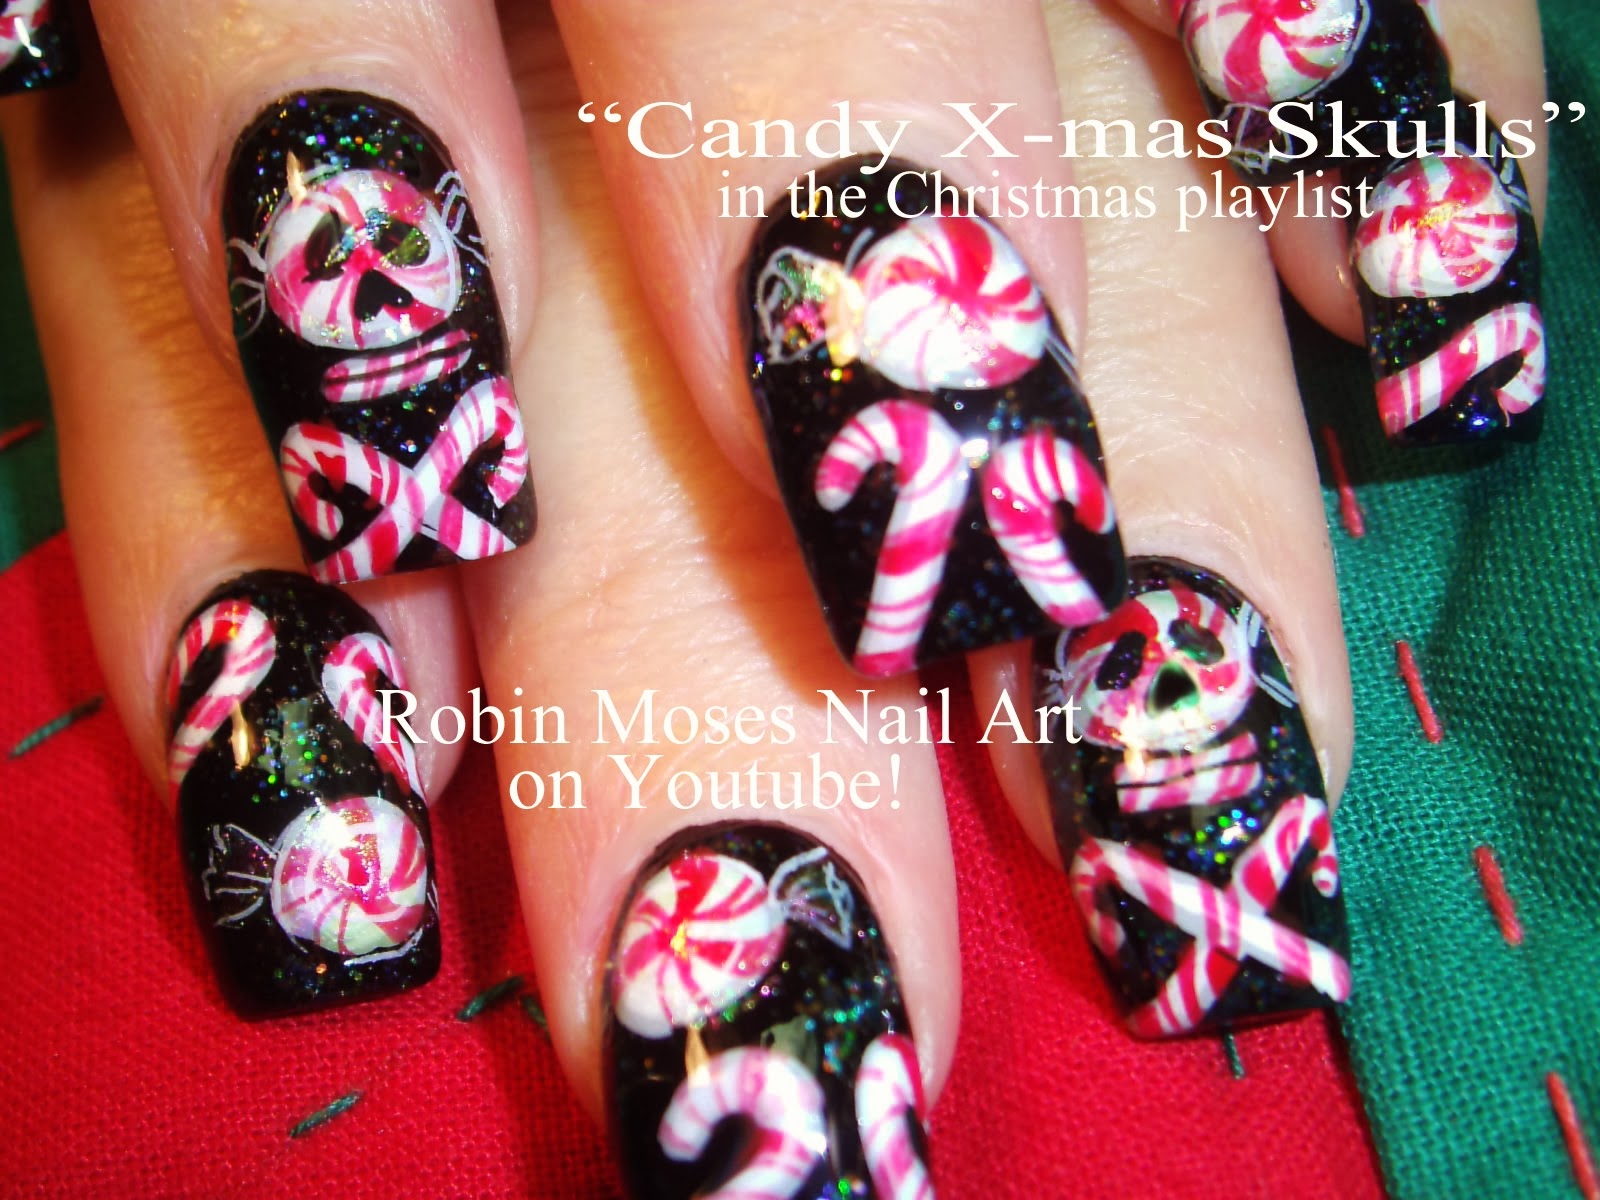 9. "Christmas Nail Art: Santa's Workshop Nails" - wide 8